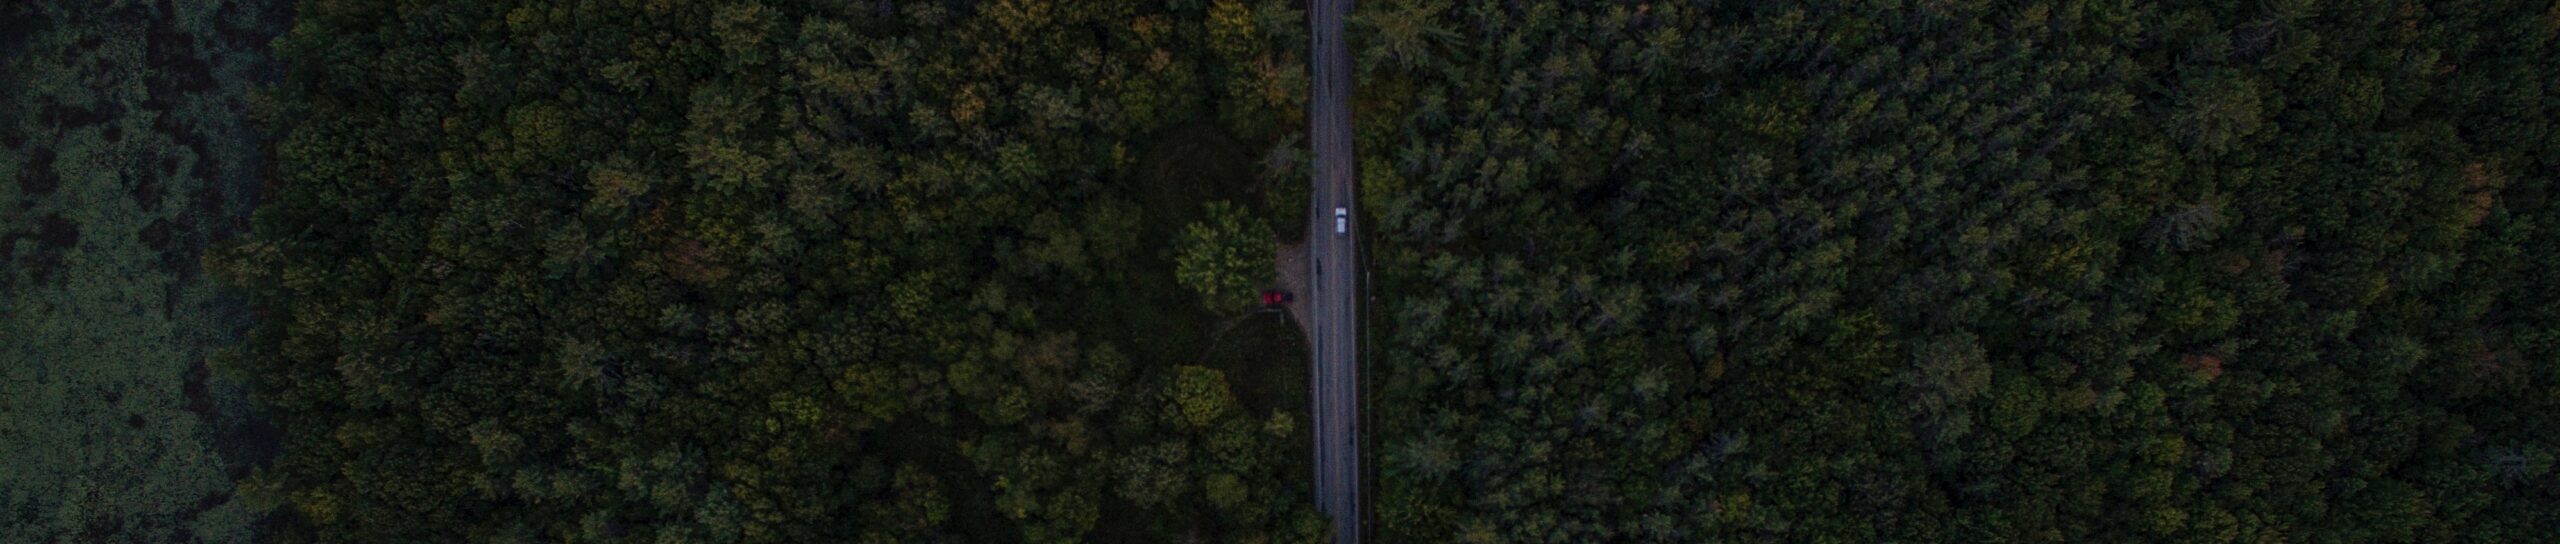 Concord, राष्ट्रीय राजमार्ग